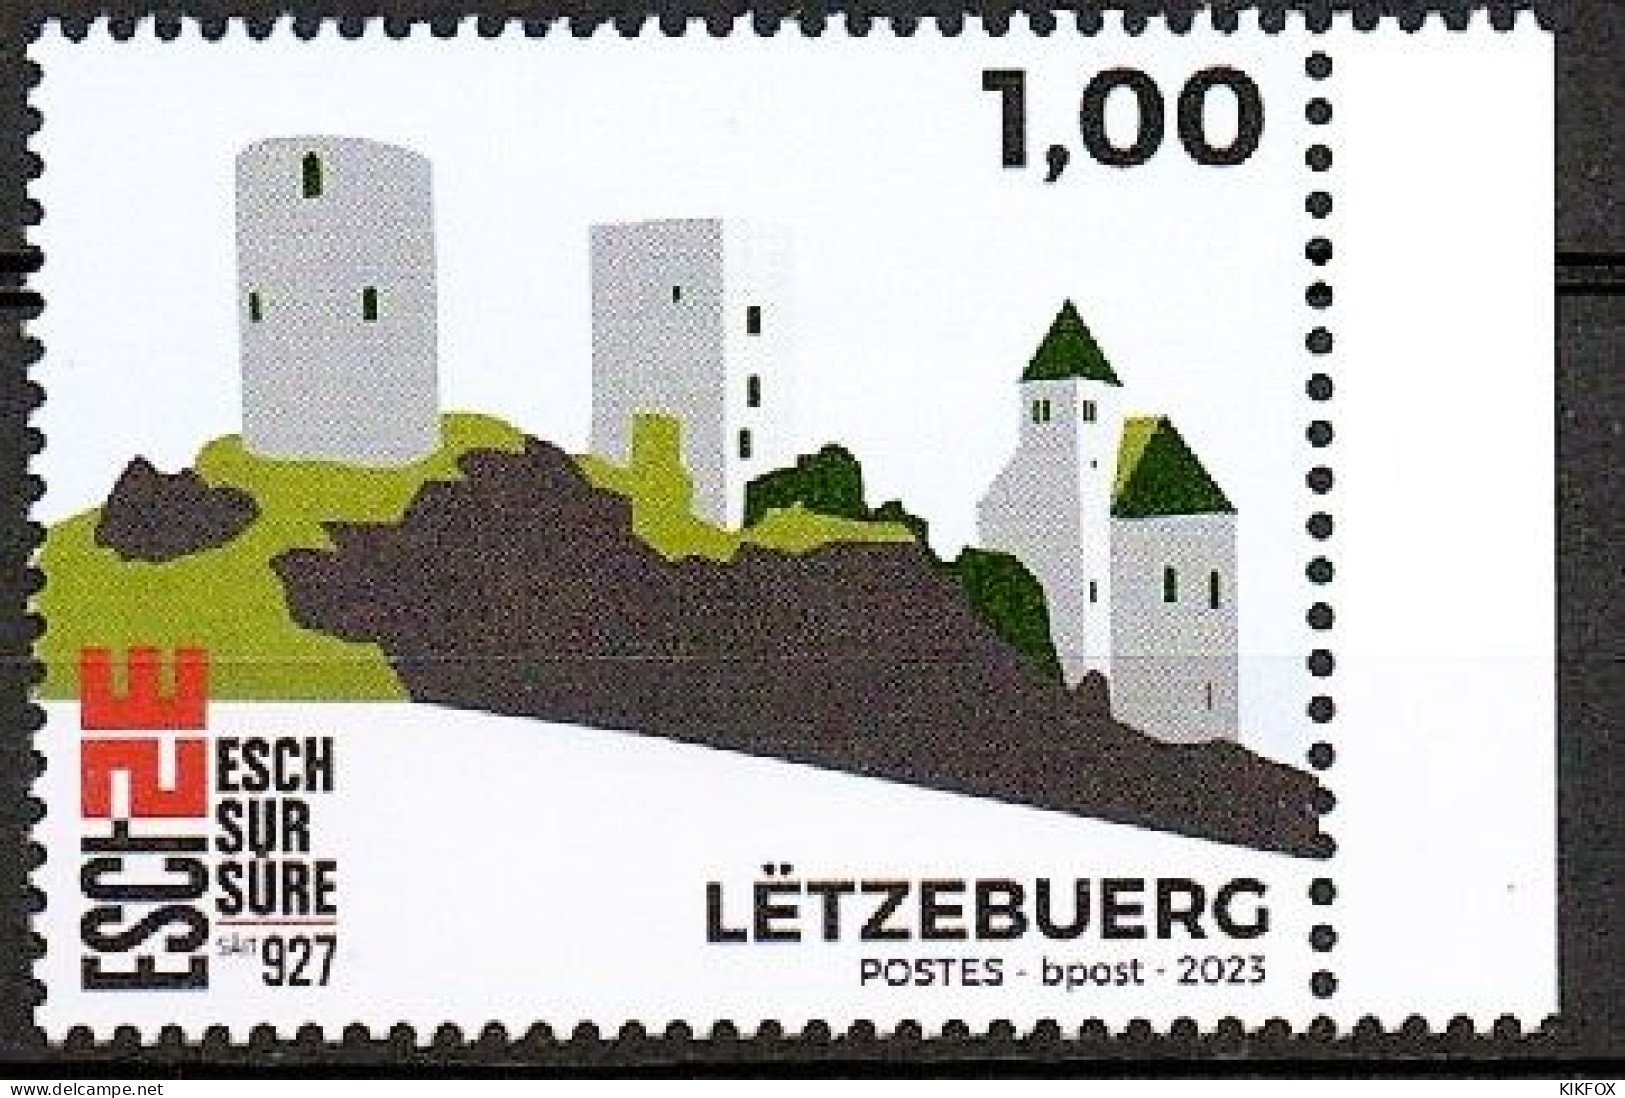 LUXEMBOURG,LUXEMBURG, 2023, MAI AUSGABE, ESCH SUR SURE SAID 927, POSTFRISCH, NEUF, - Unused Stamps